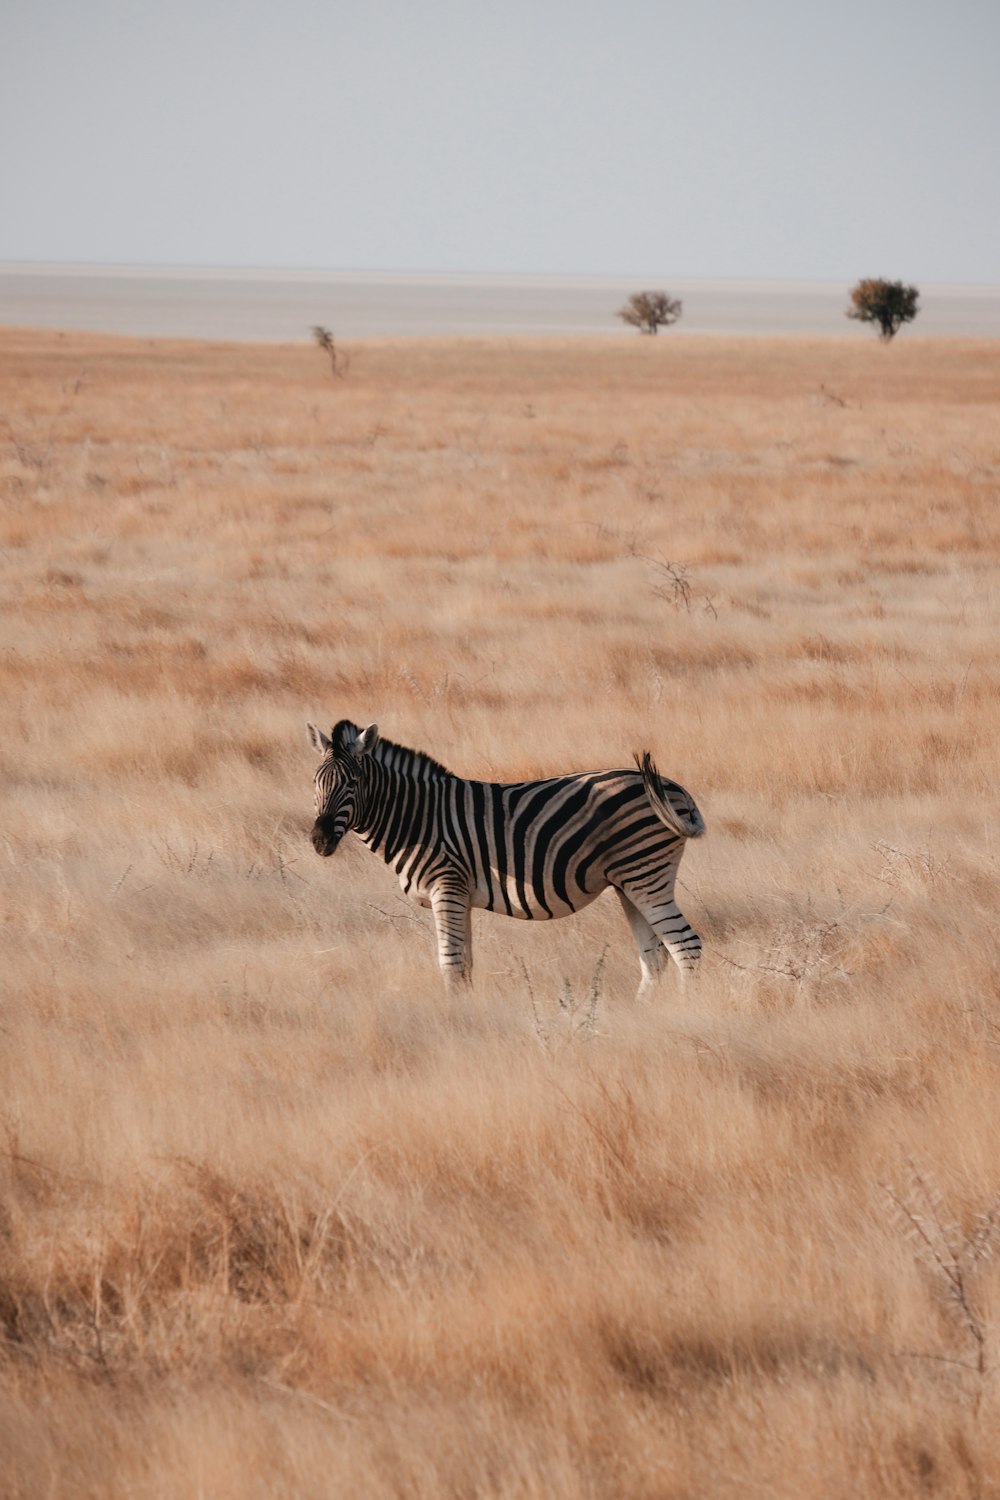 a zebra walking through a field